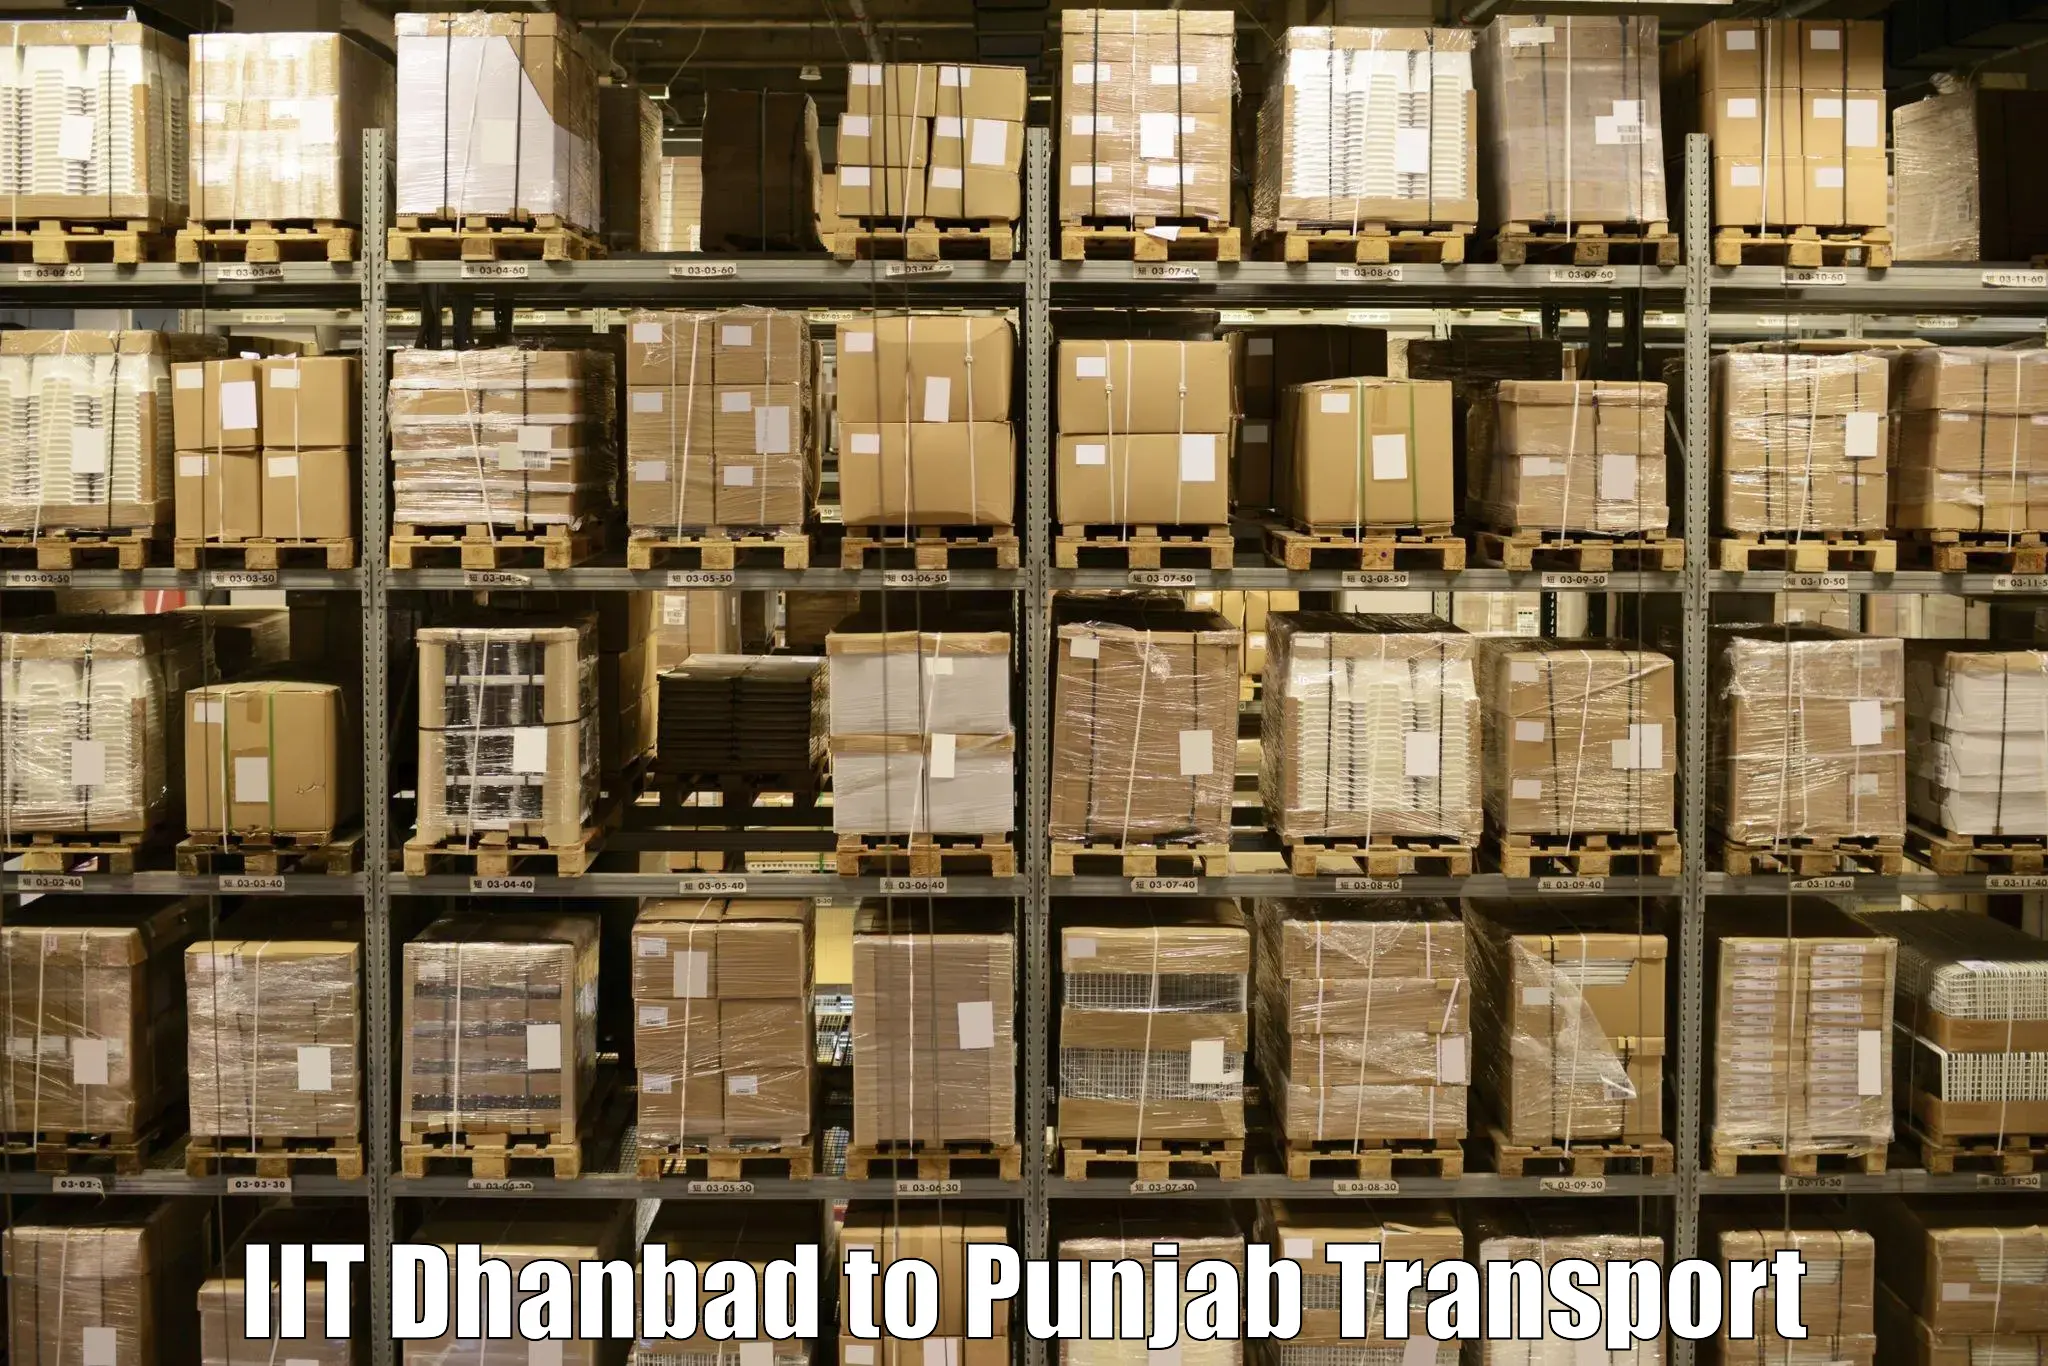 Interstate transport services IIT Dhanbad to Rupnagar